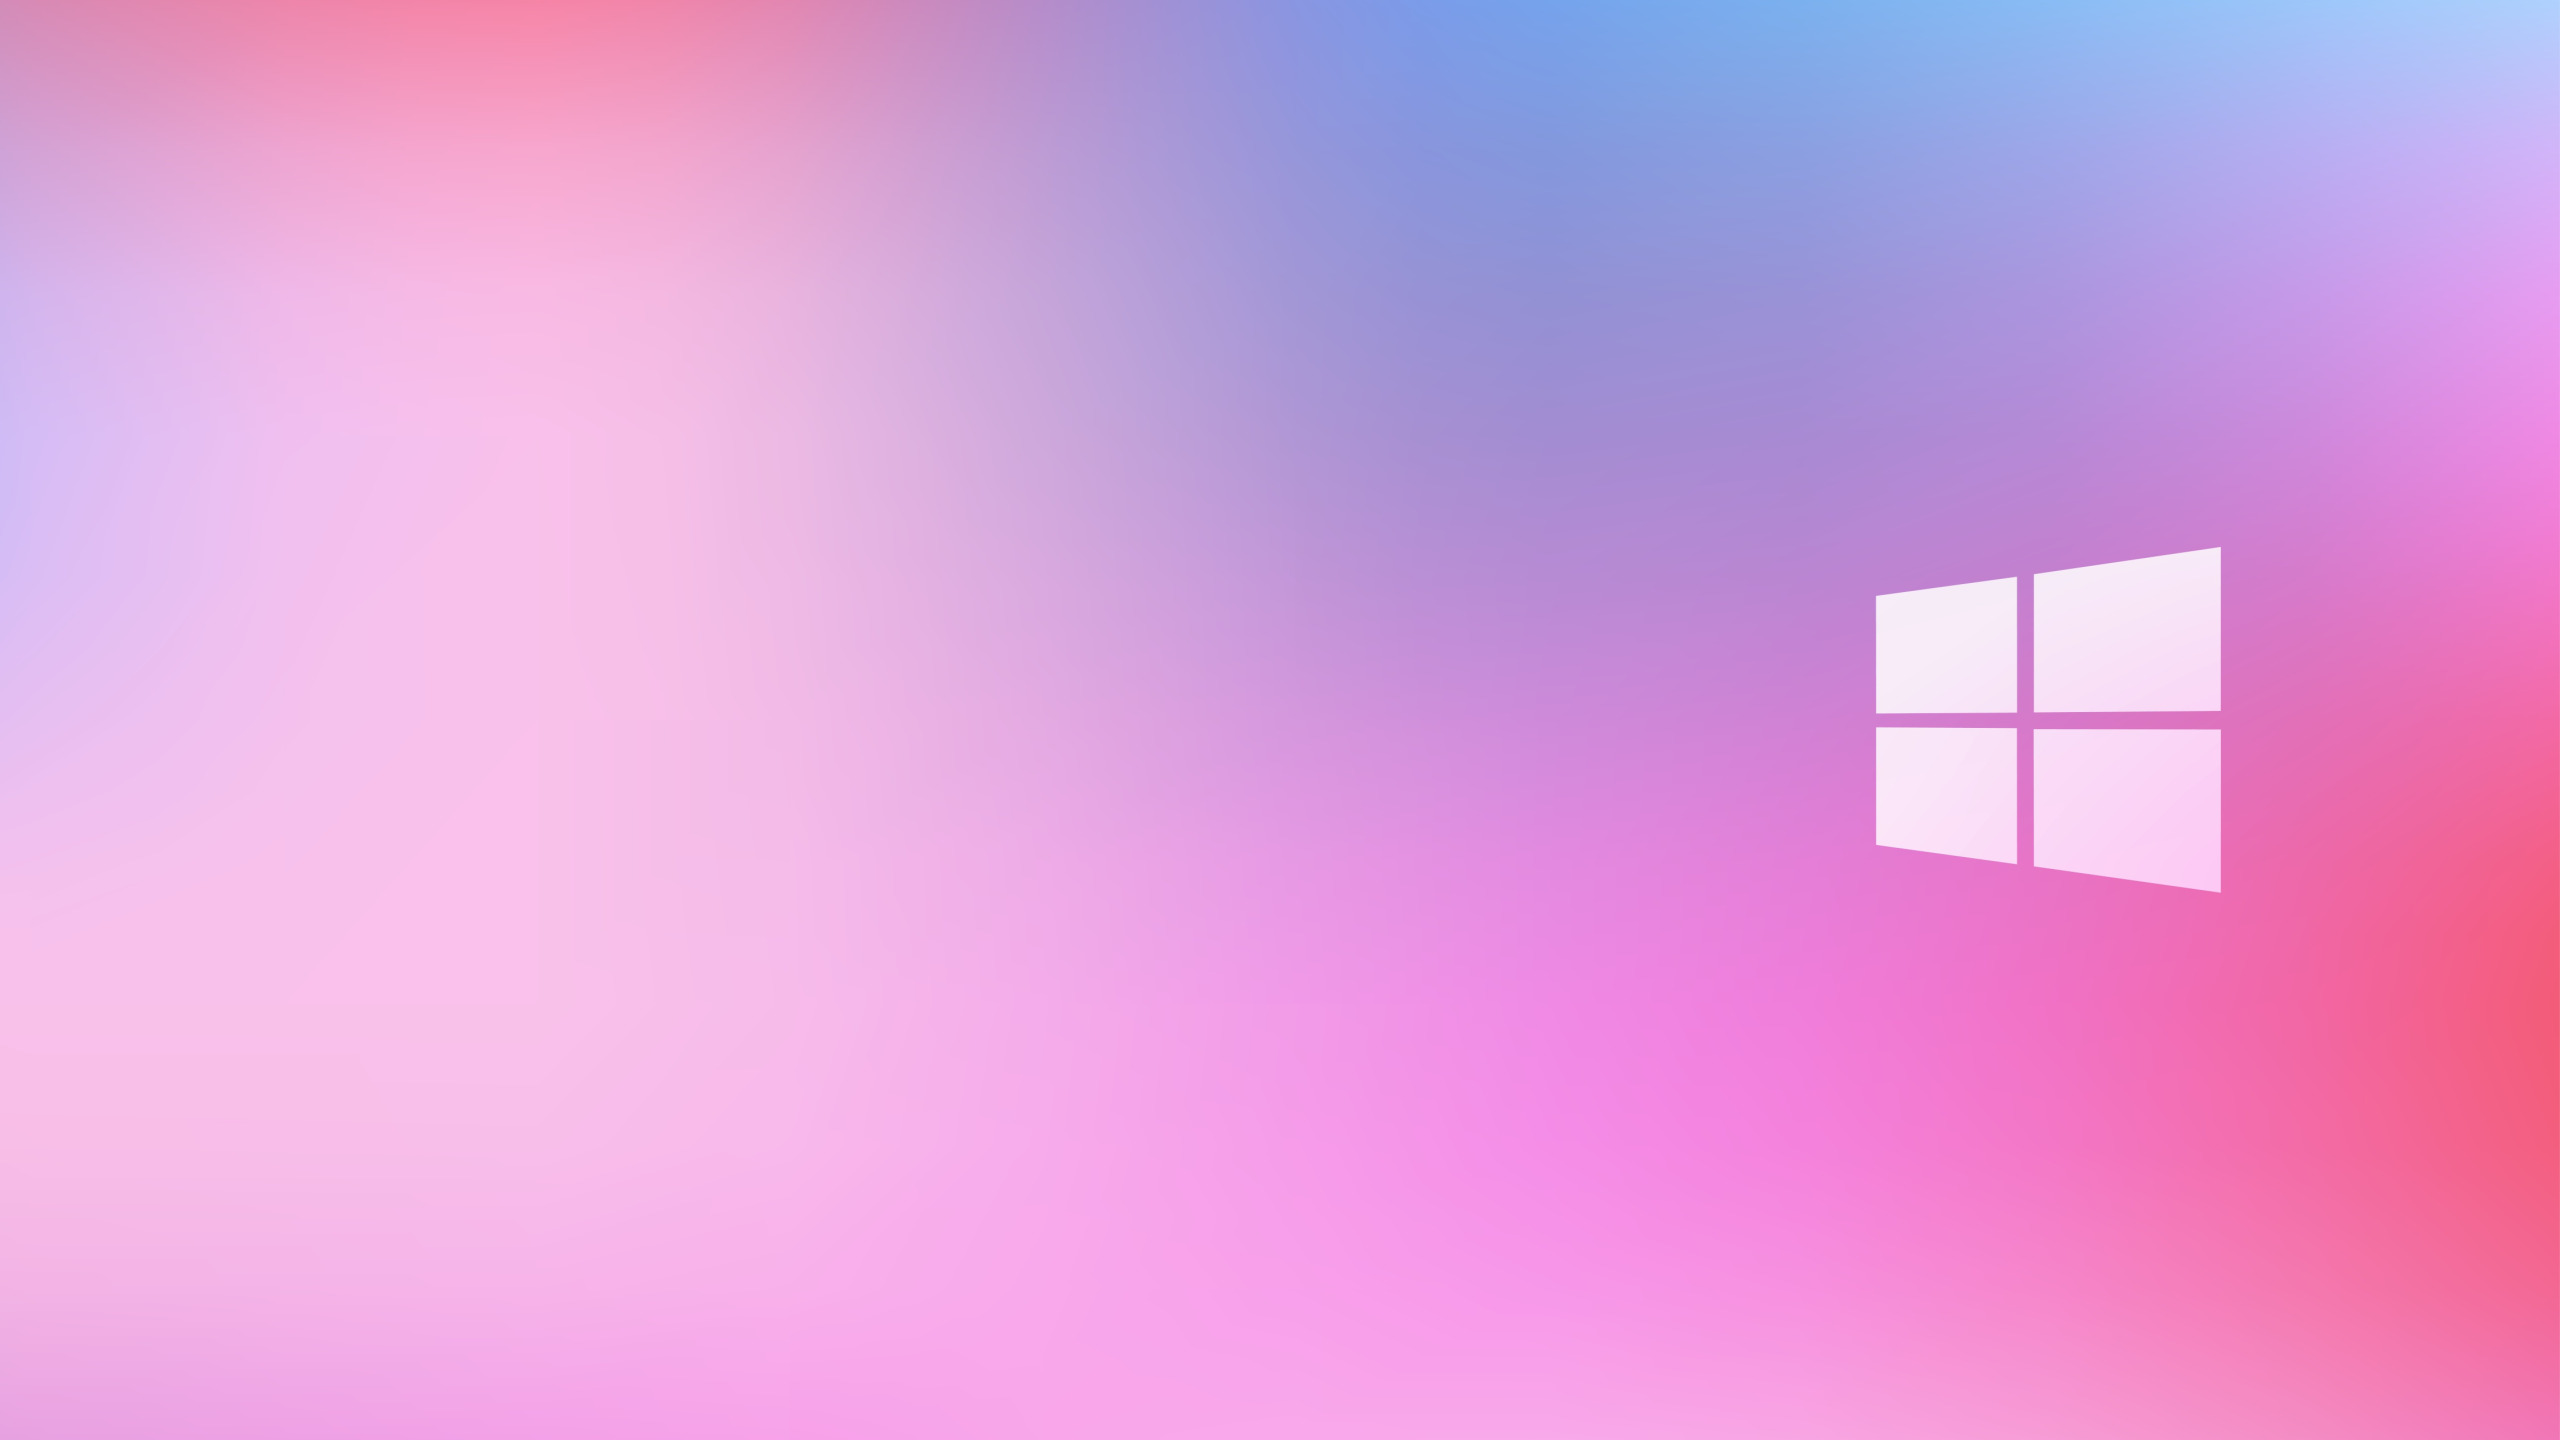 9 20 х 16. Windows 10 Pink. Розовый виндовс 10. Обои Windows 10. Фон виндовс 10.